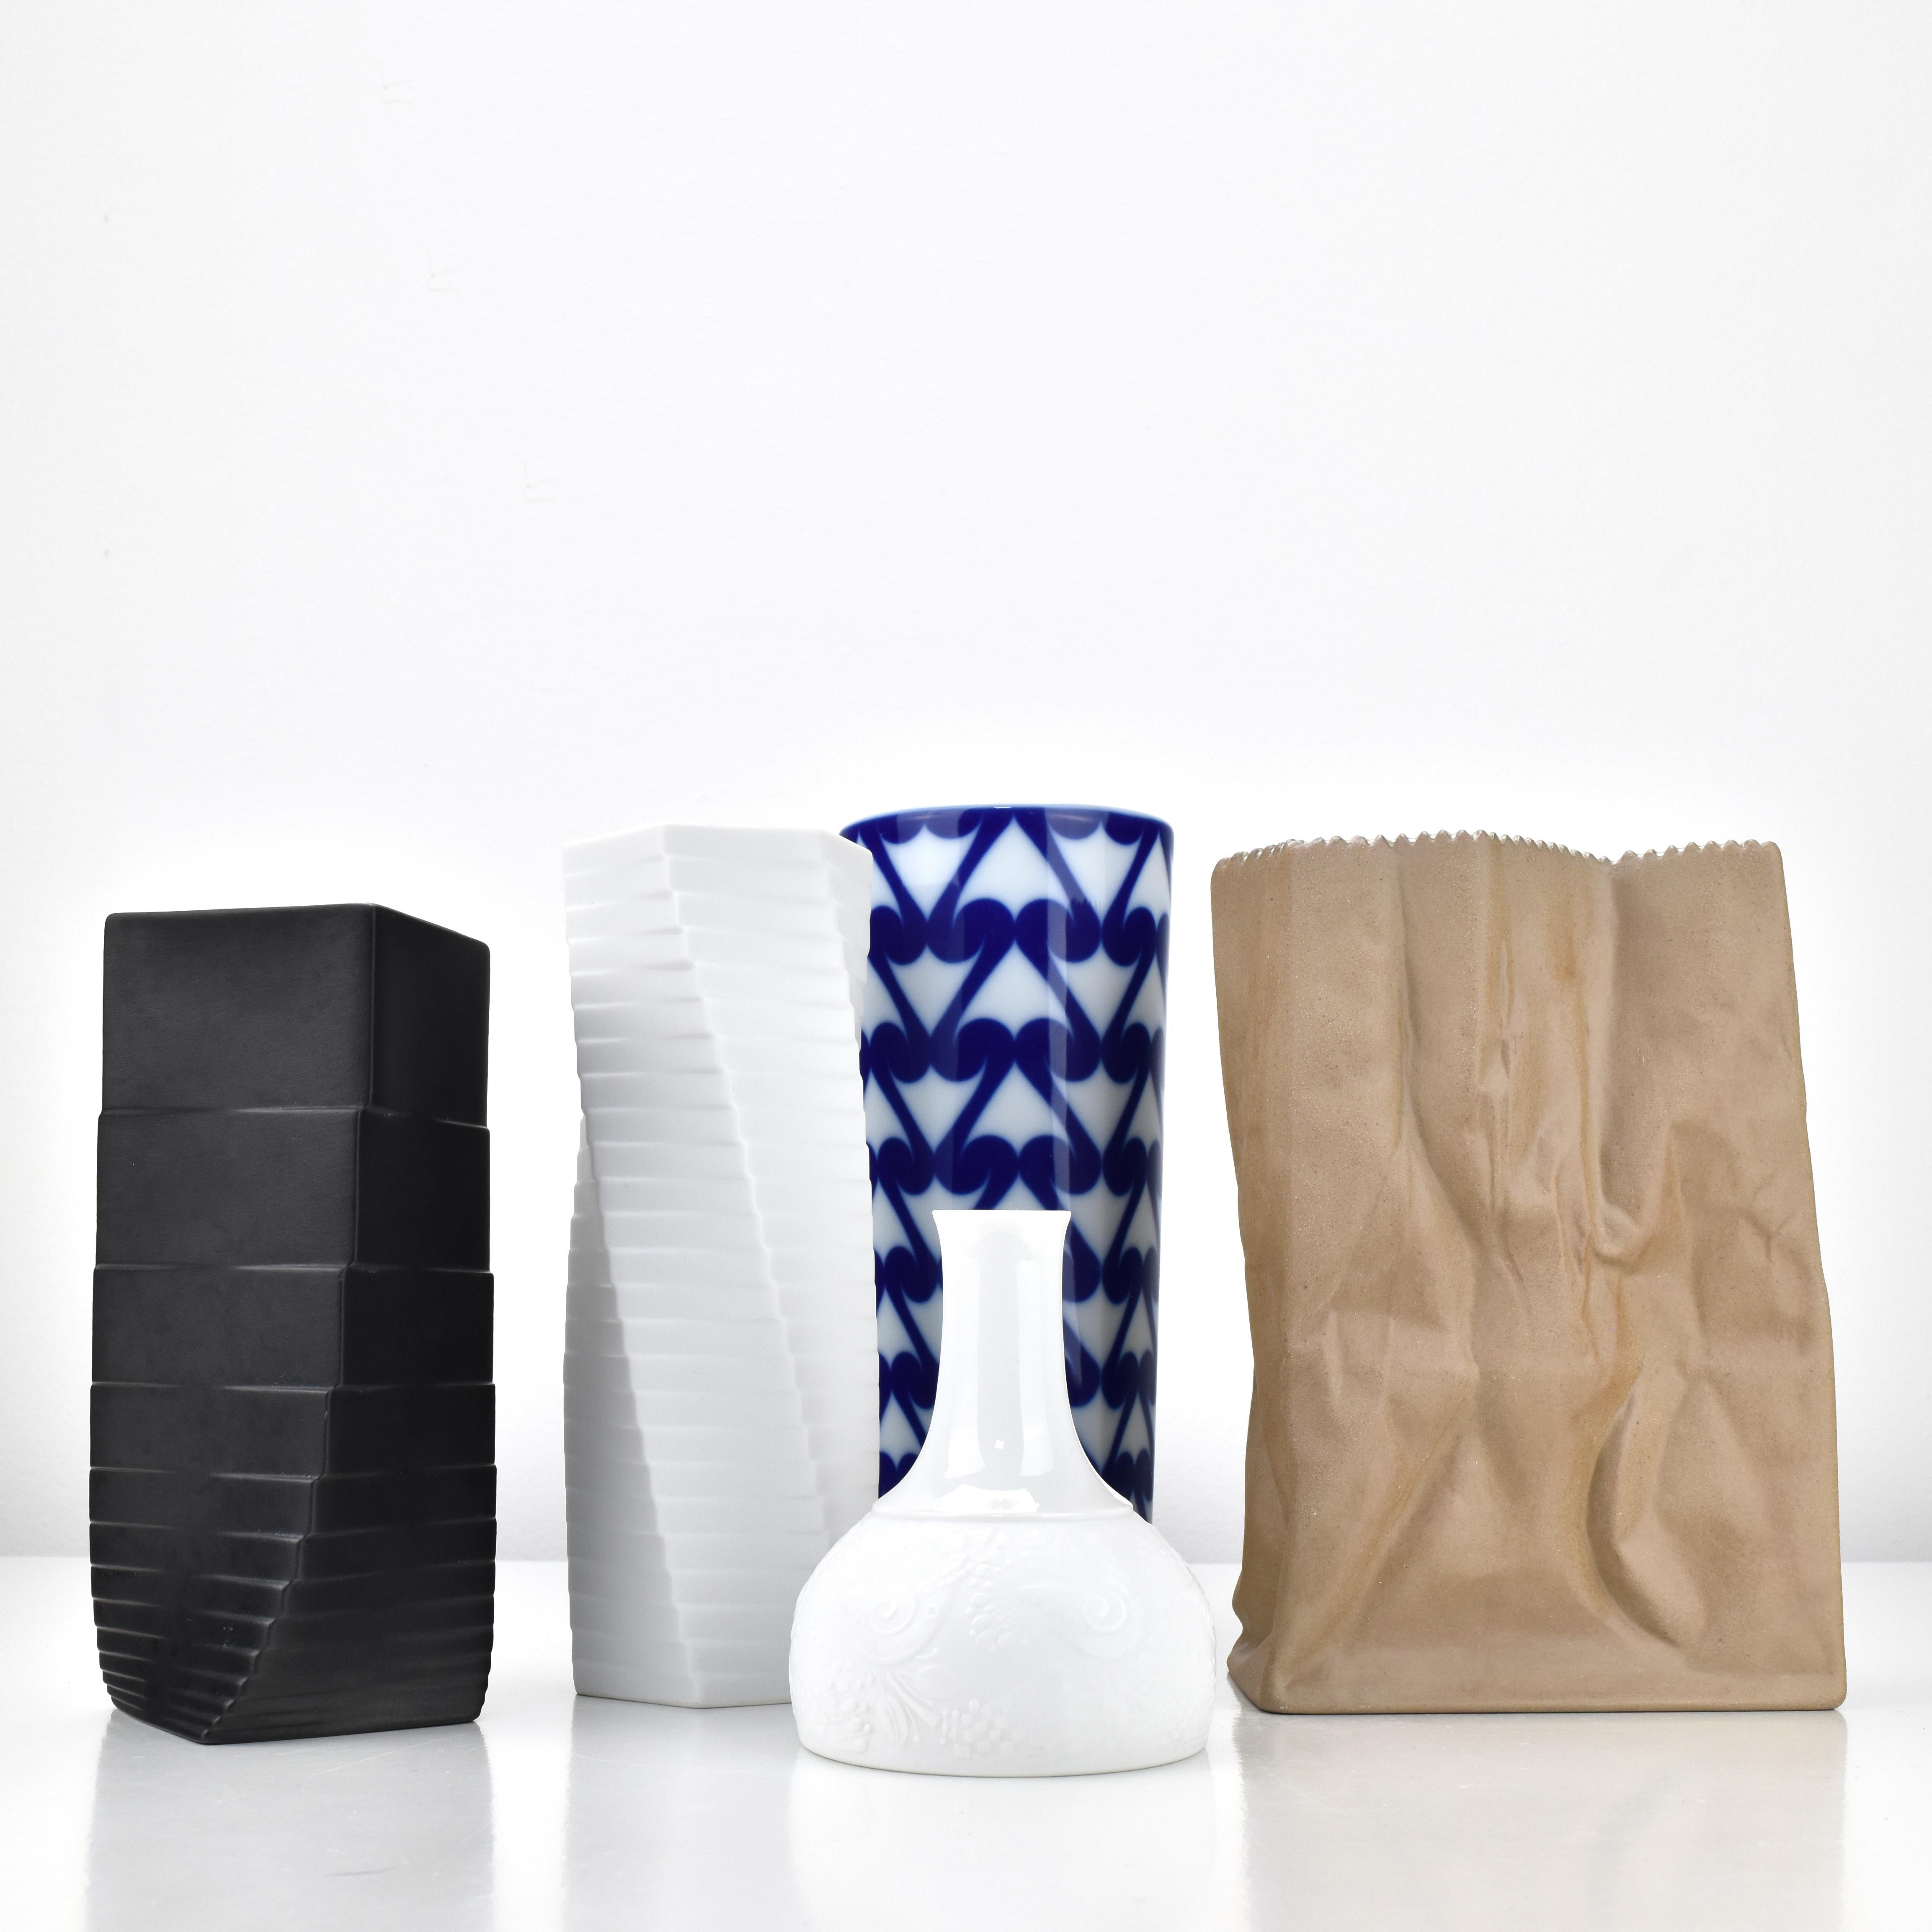 Björn Wiinblad Vase White Porcelain Rosenthal Studio-line Germany Dove Pattern For Sale 2